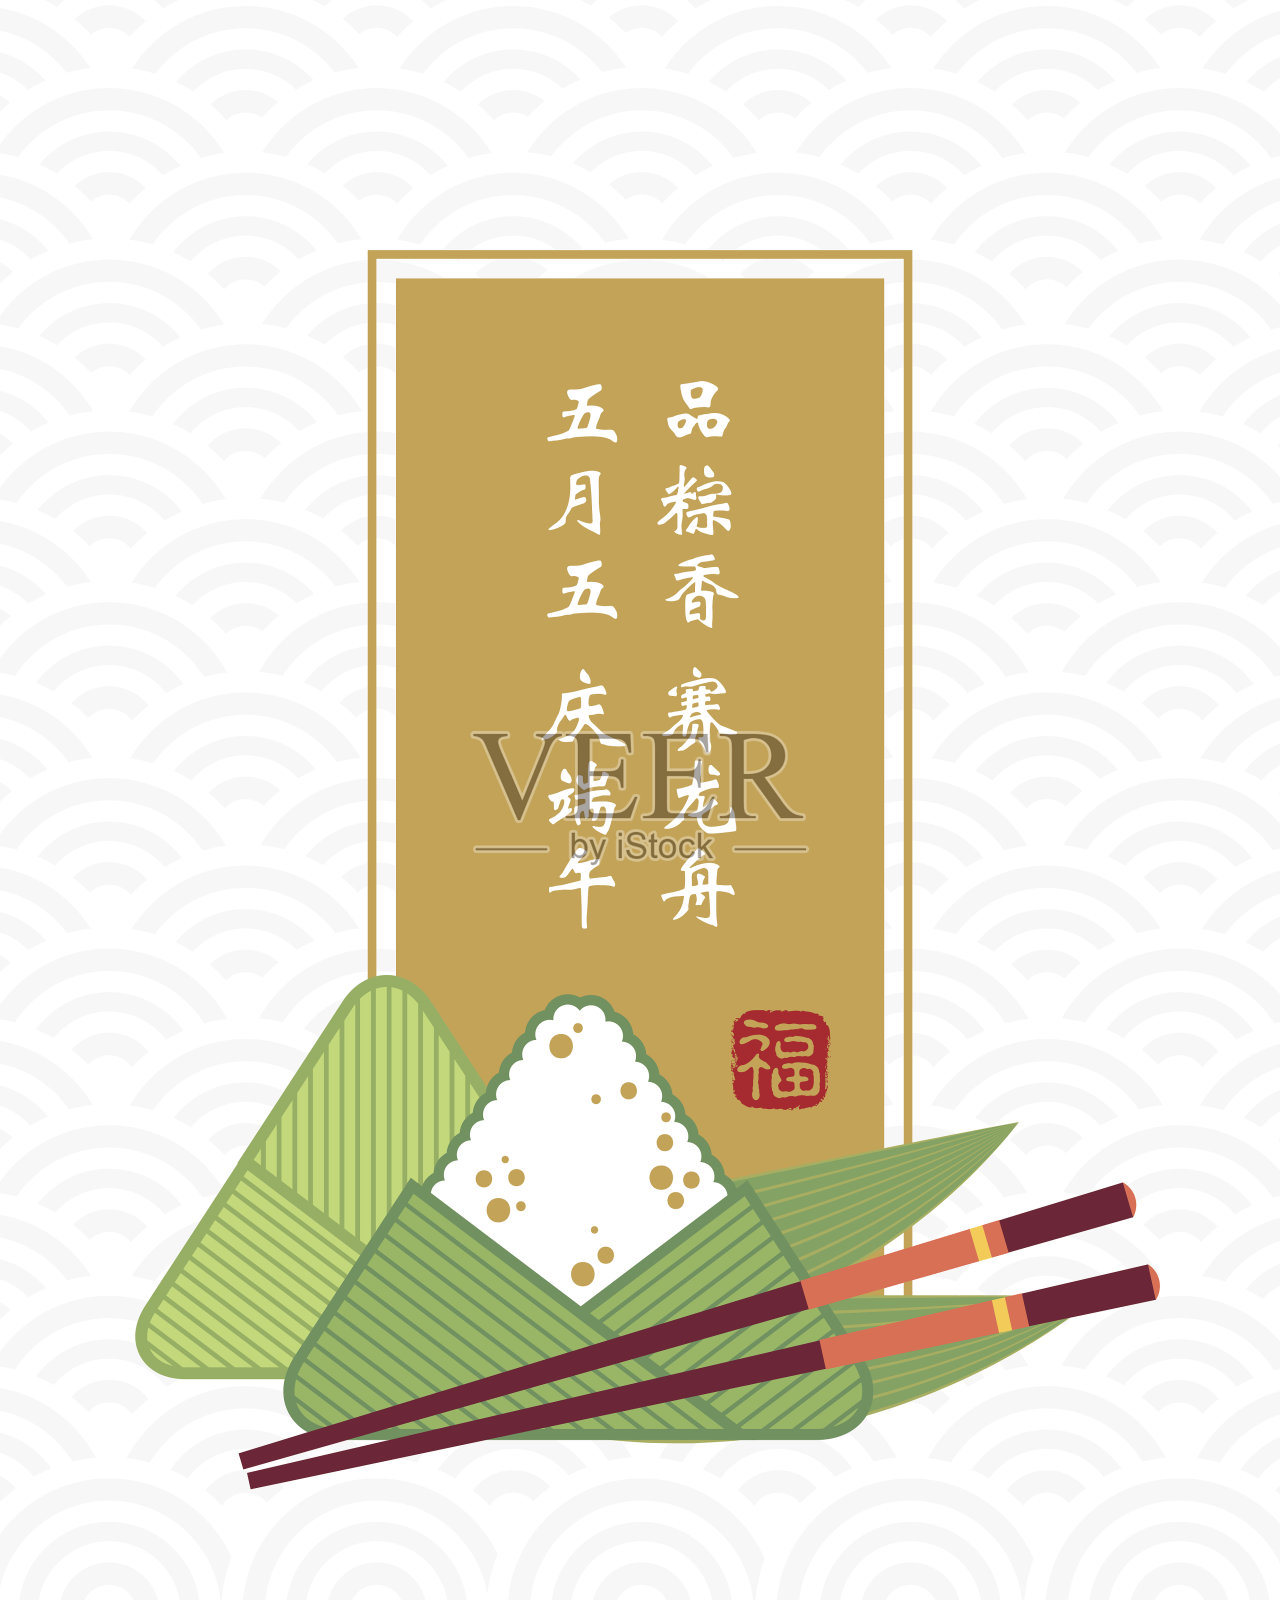 饺子和筷子插画图片素材